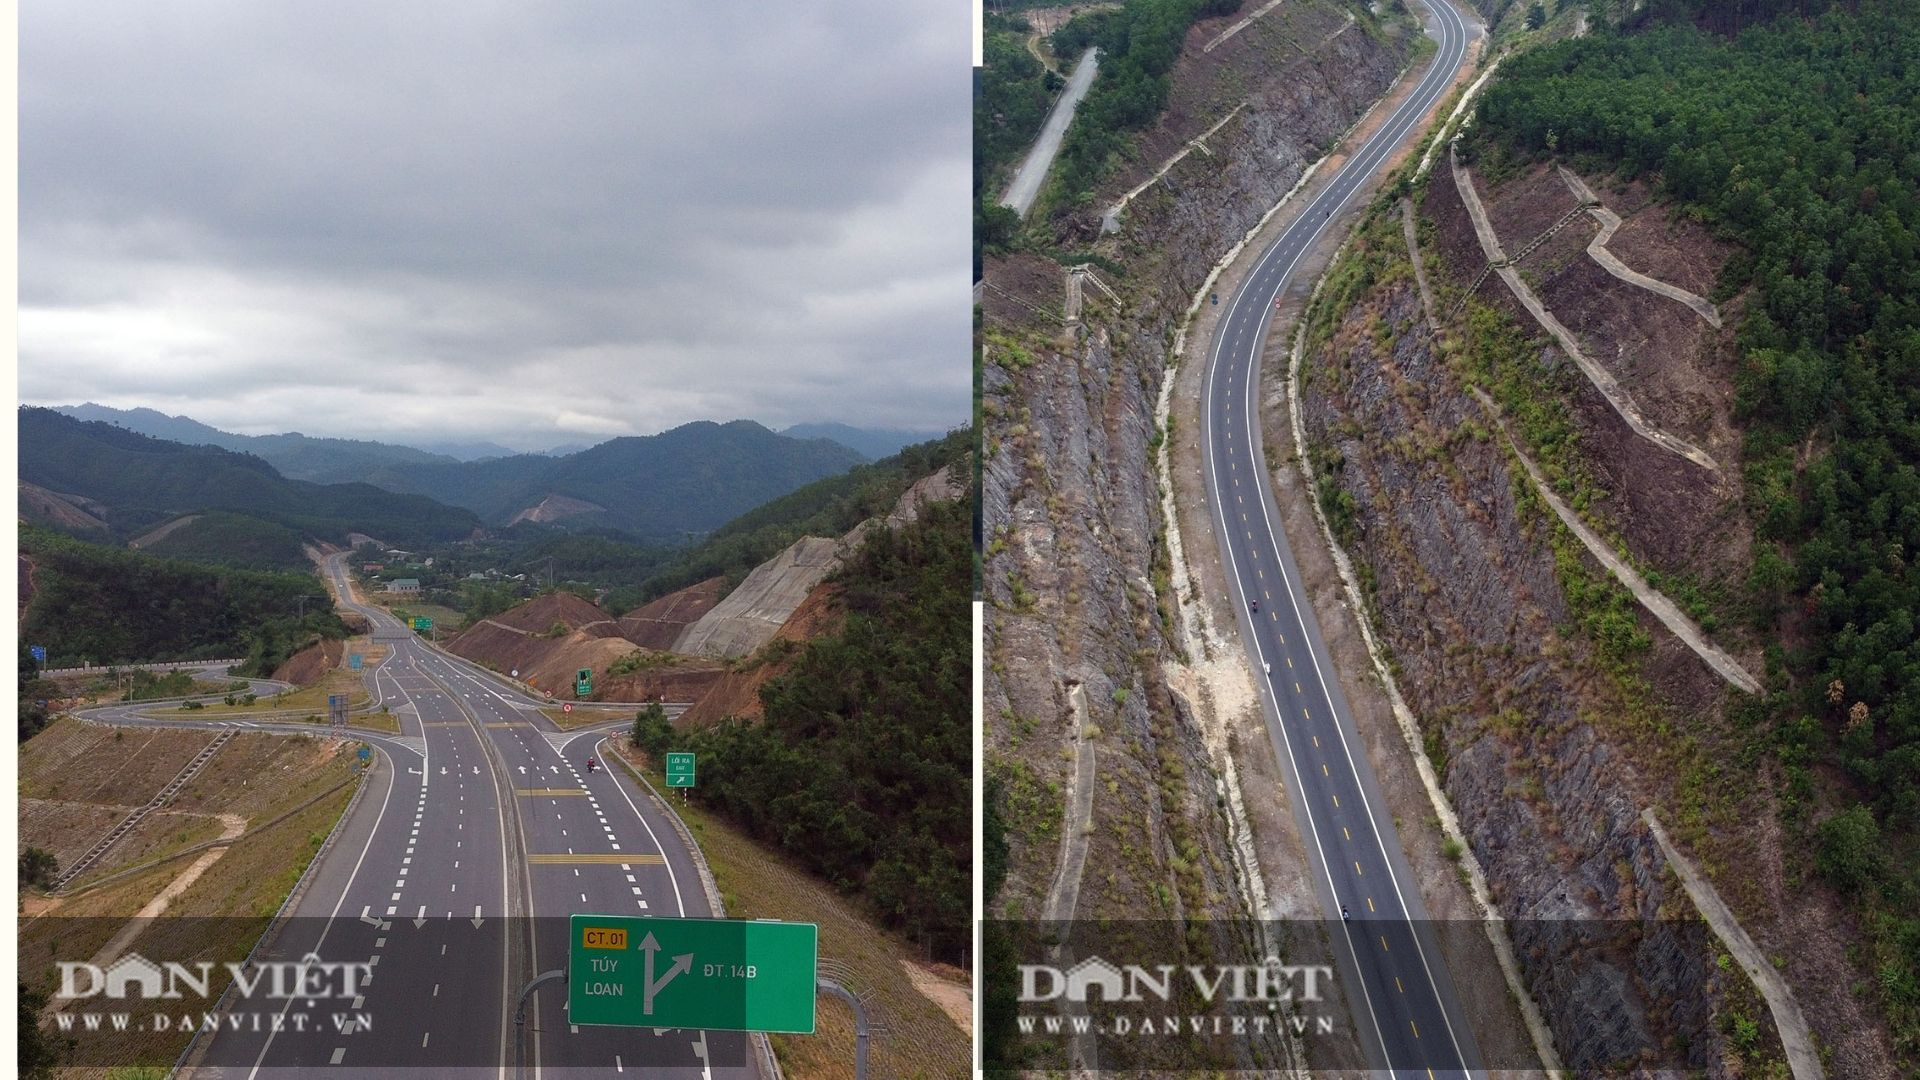 Cao tốc La Sơn - Tuý Loan dự kiến tháng 6/2021 chính thức vận hành khai thác.